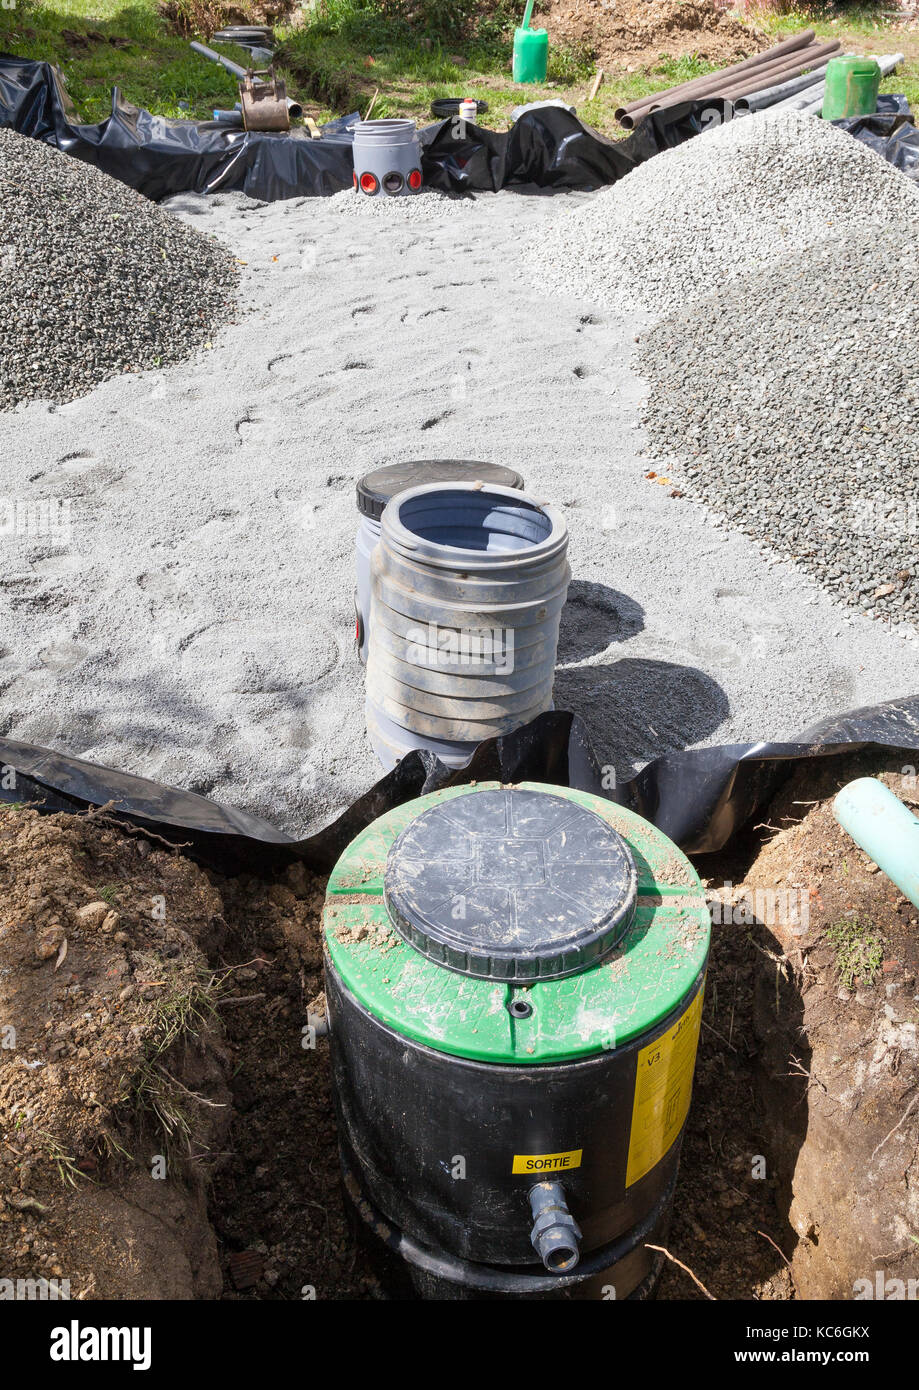 Schließen Sie die Pumpe, Filter und Sand und Kies filter Bett für einen neuen Haushalt septischen Tank für Abwasser und Abwasser Entsorgung während der Installation lo Stockfoto